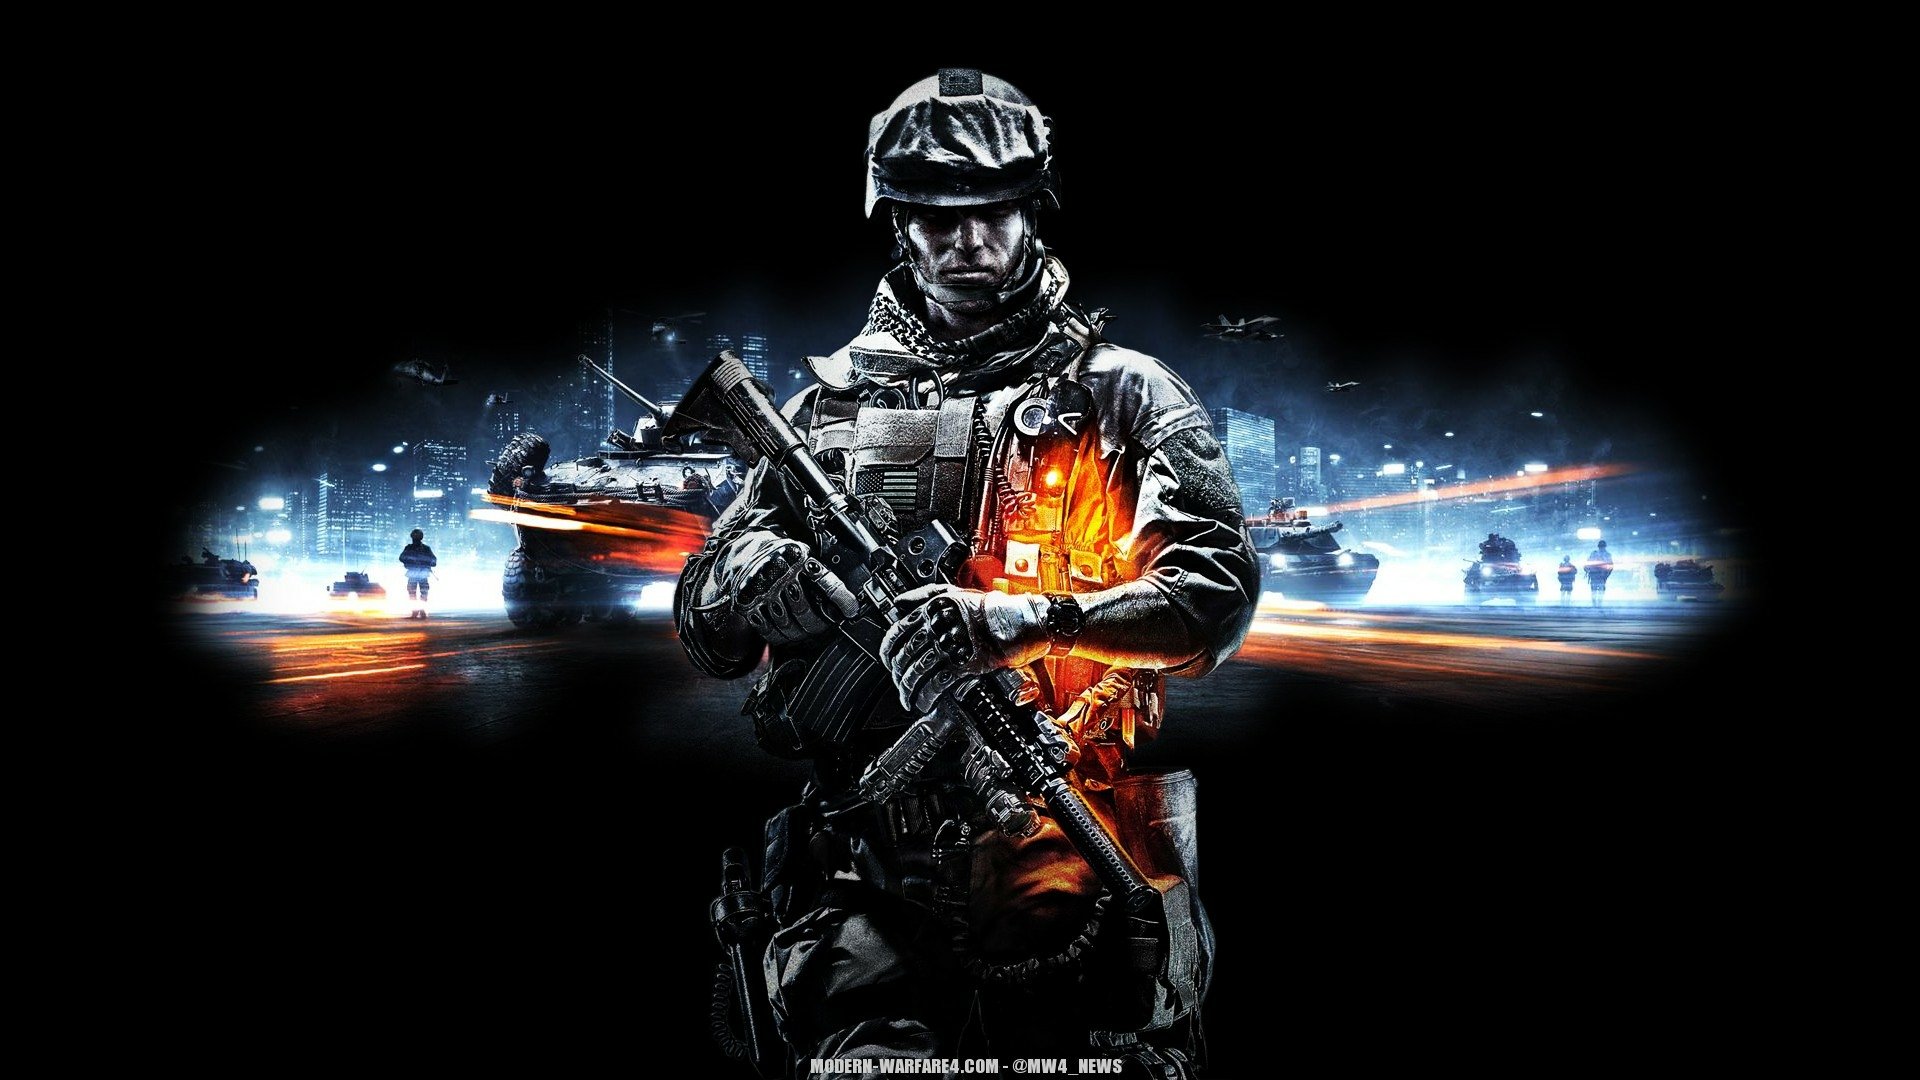 Hãy quay lại với trận chiến đã qua với hình nền Battlefield 3 HD tuyệt đẹp. Những hình ảnh chân thật và sống động này sẽ đem bạn đến thế giới của những chiến binh dũng cảm và những cuộc chiến nguy hiểm.